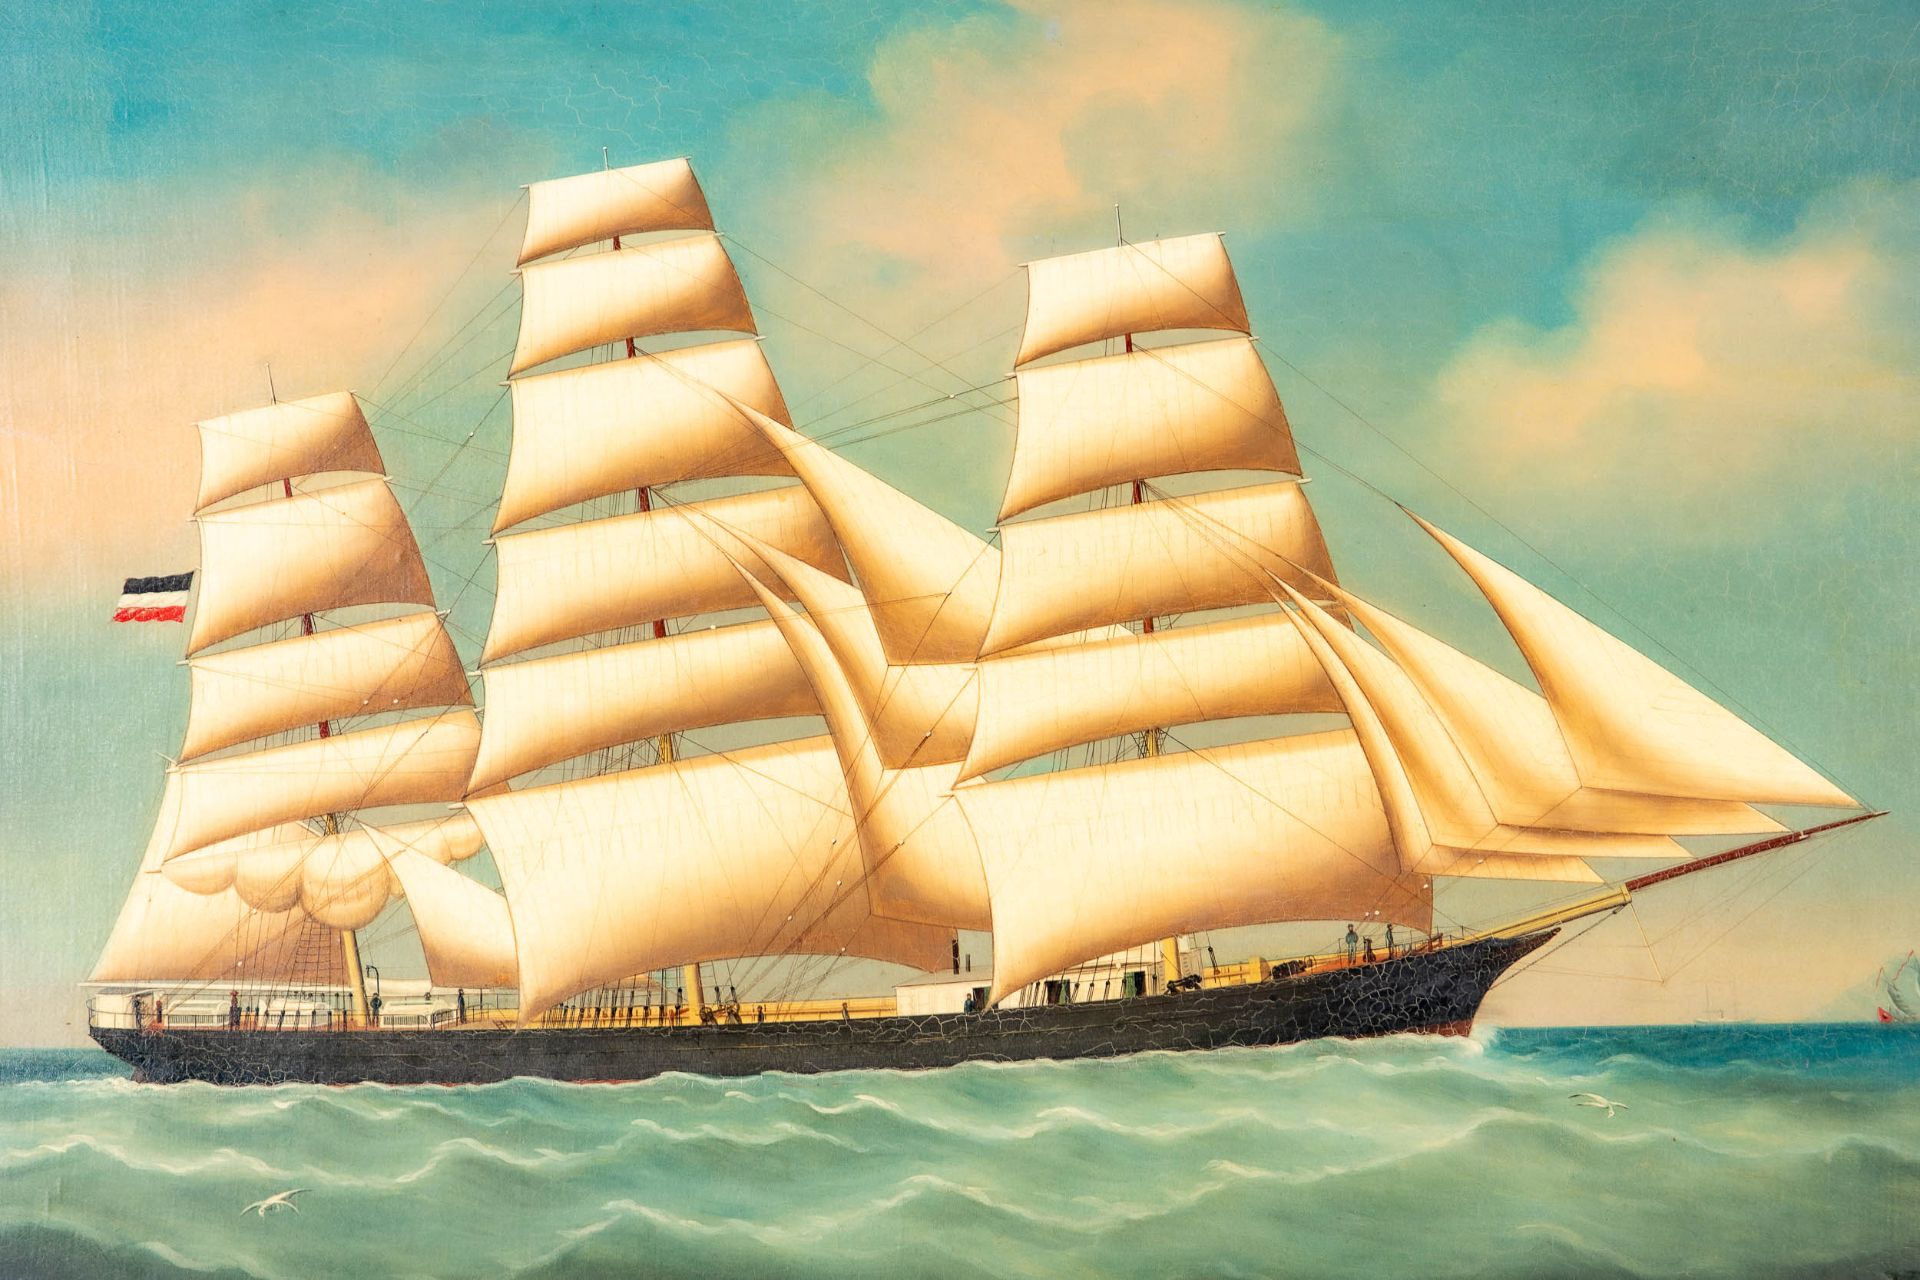 Kapitänsbild des Vollschiffes "Industrie" (1872 in Holland gebaut), qualitativ hochwertiges Gemälde - Image 3 of 24